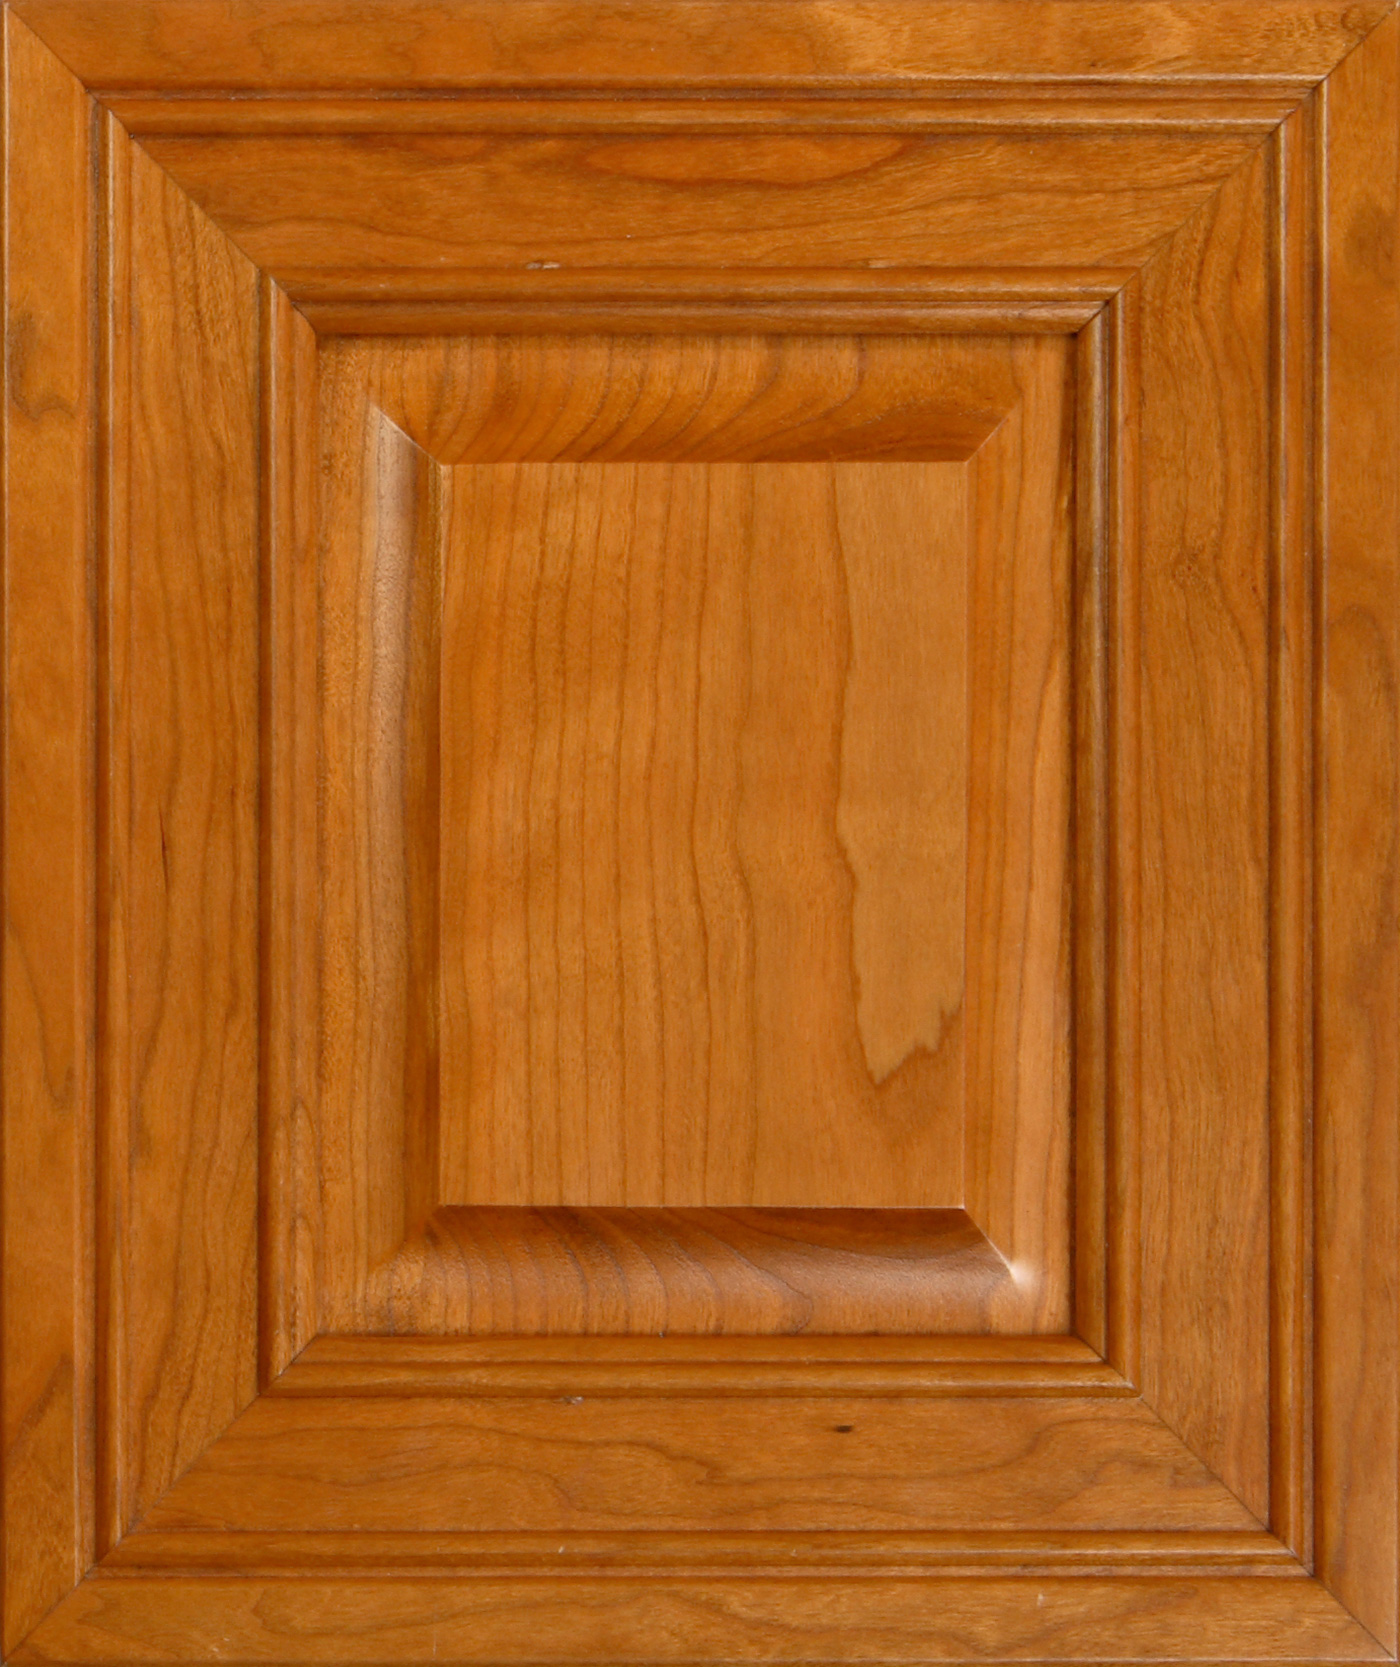 Cherry wood cabinet door